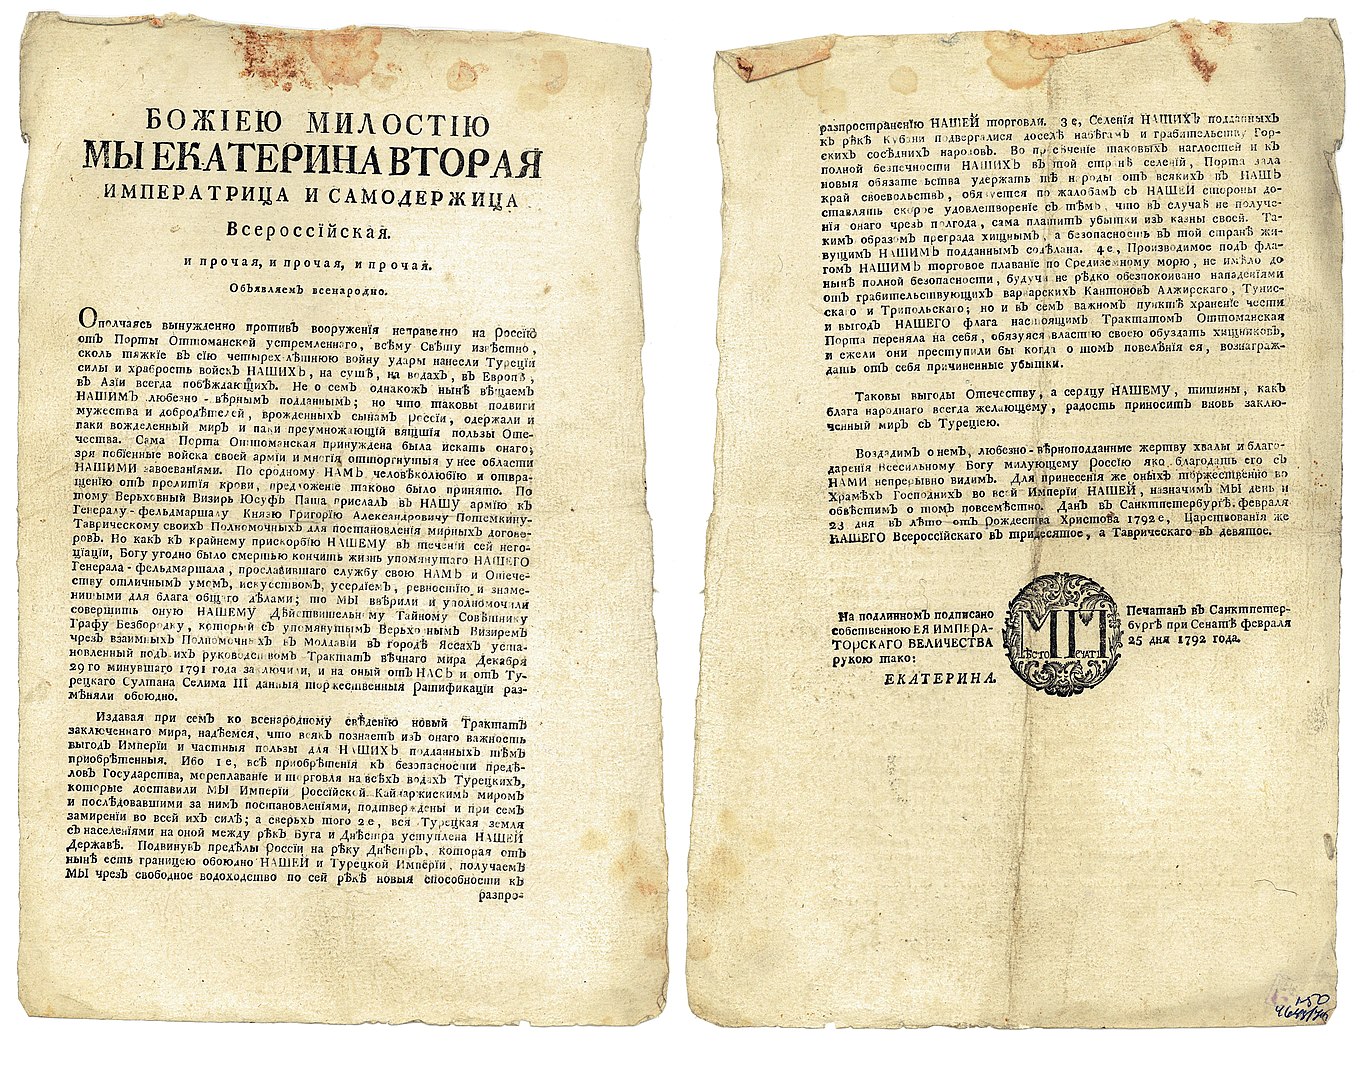 Манифест о Ясском мирном договоре с Османской Империей, 25 февраля 1792 г.